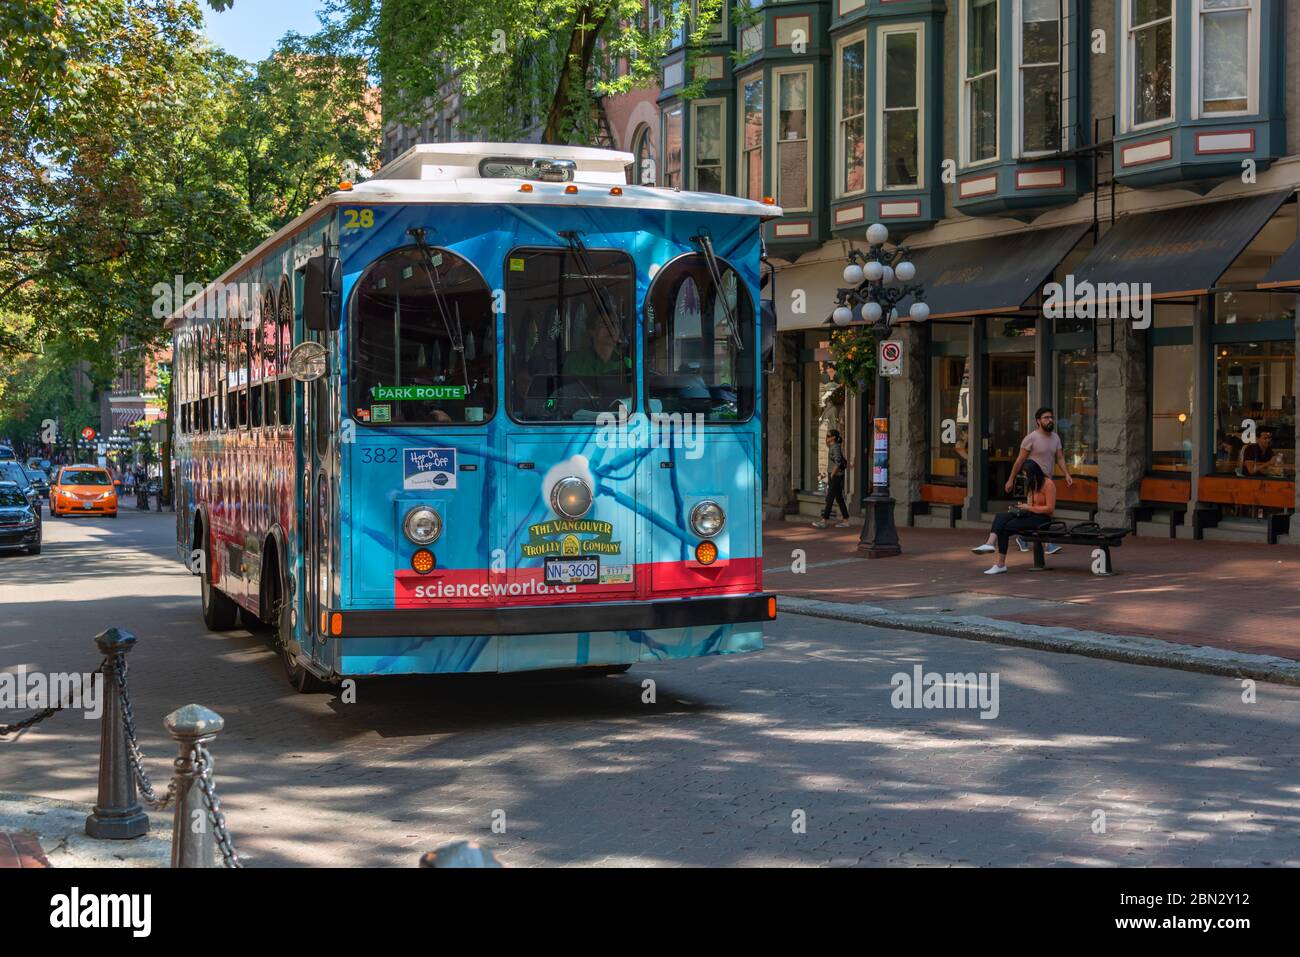 VANCOUVER, CANADÁ - 3 de agosto: Un autobús en una calle de Gastown, el distrito más antiguo de la ciudad, el 3 de agosto de 2019 en Vancouver BC Foto de stock